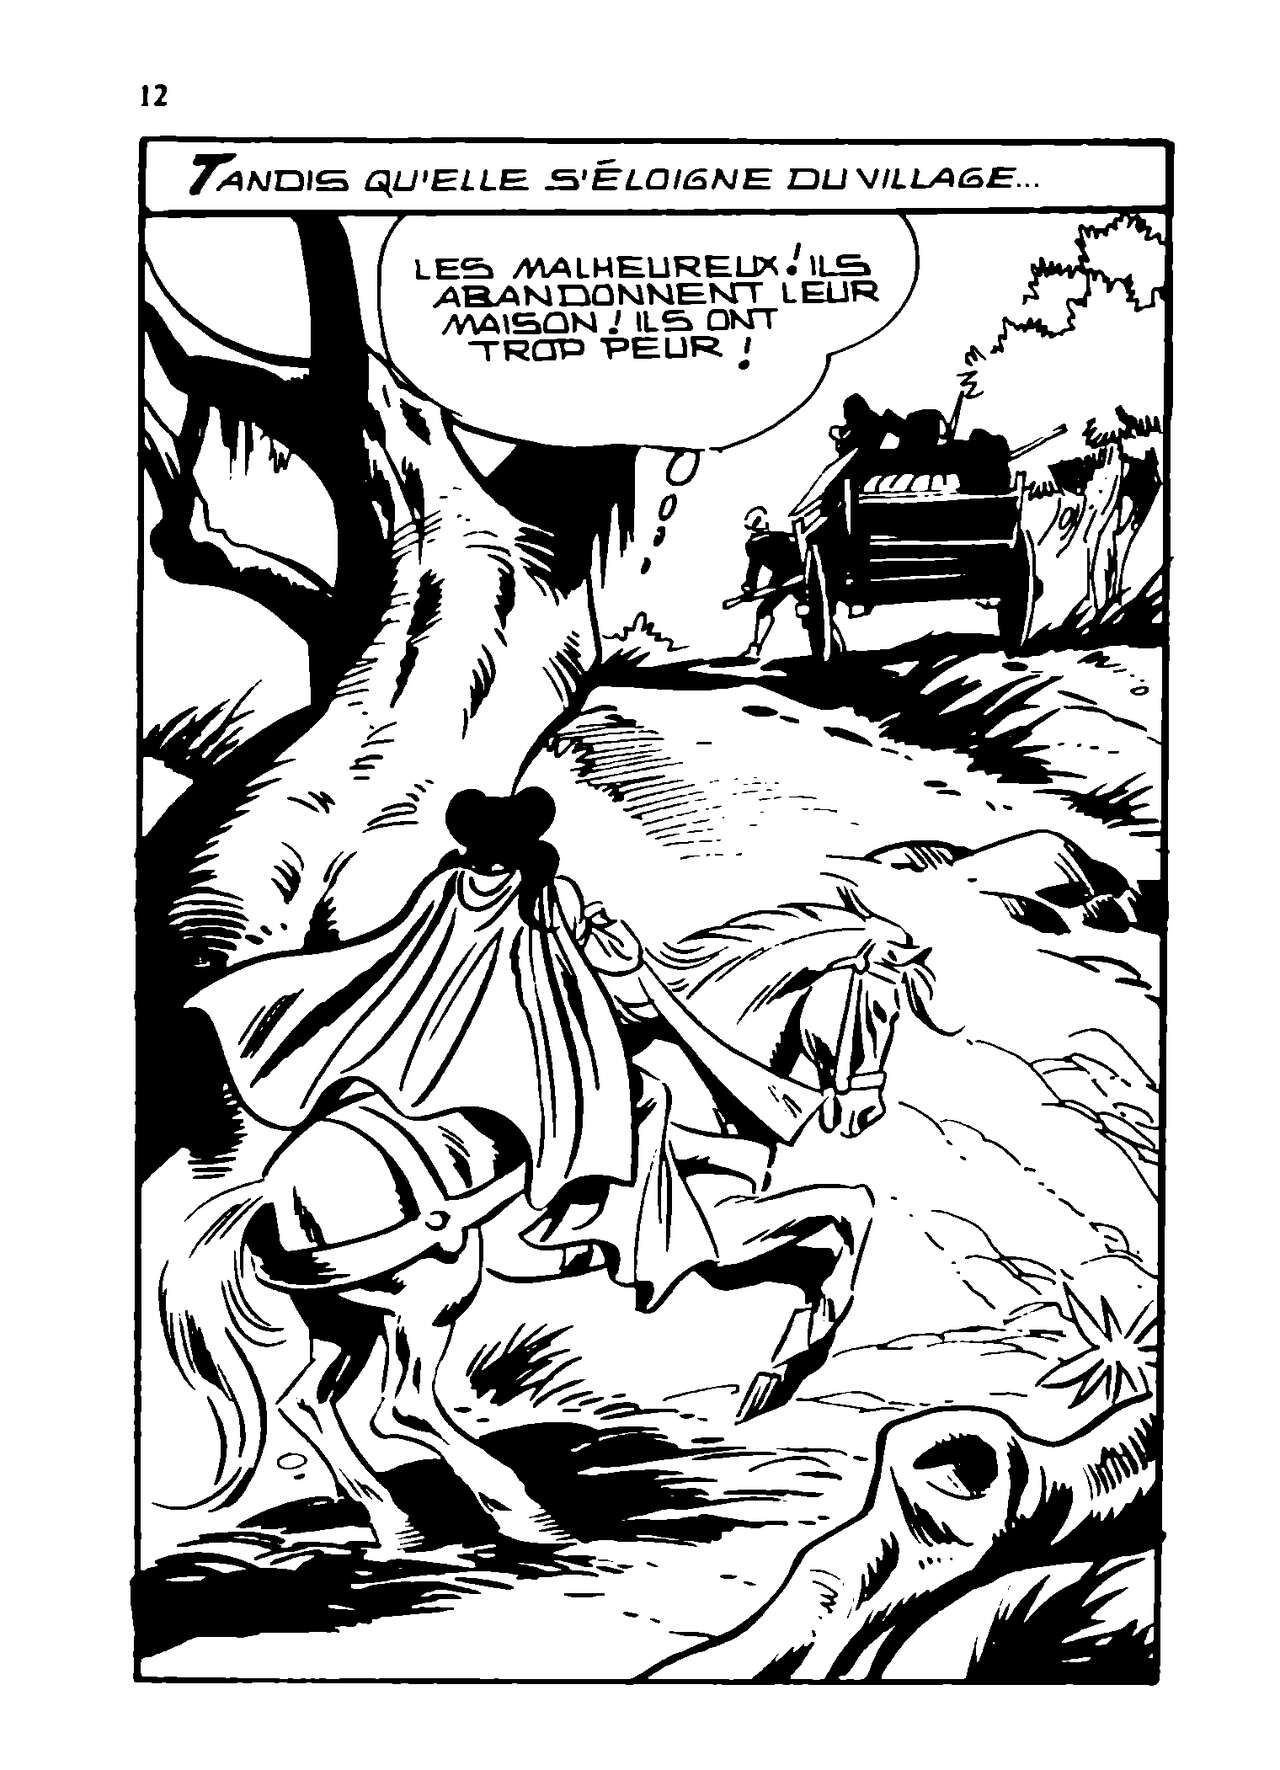 Contes Malicieux 44 : Le monstre du Loch-Fess numero d'image 11